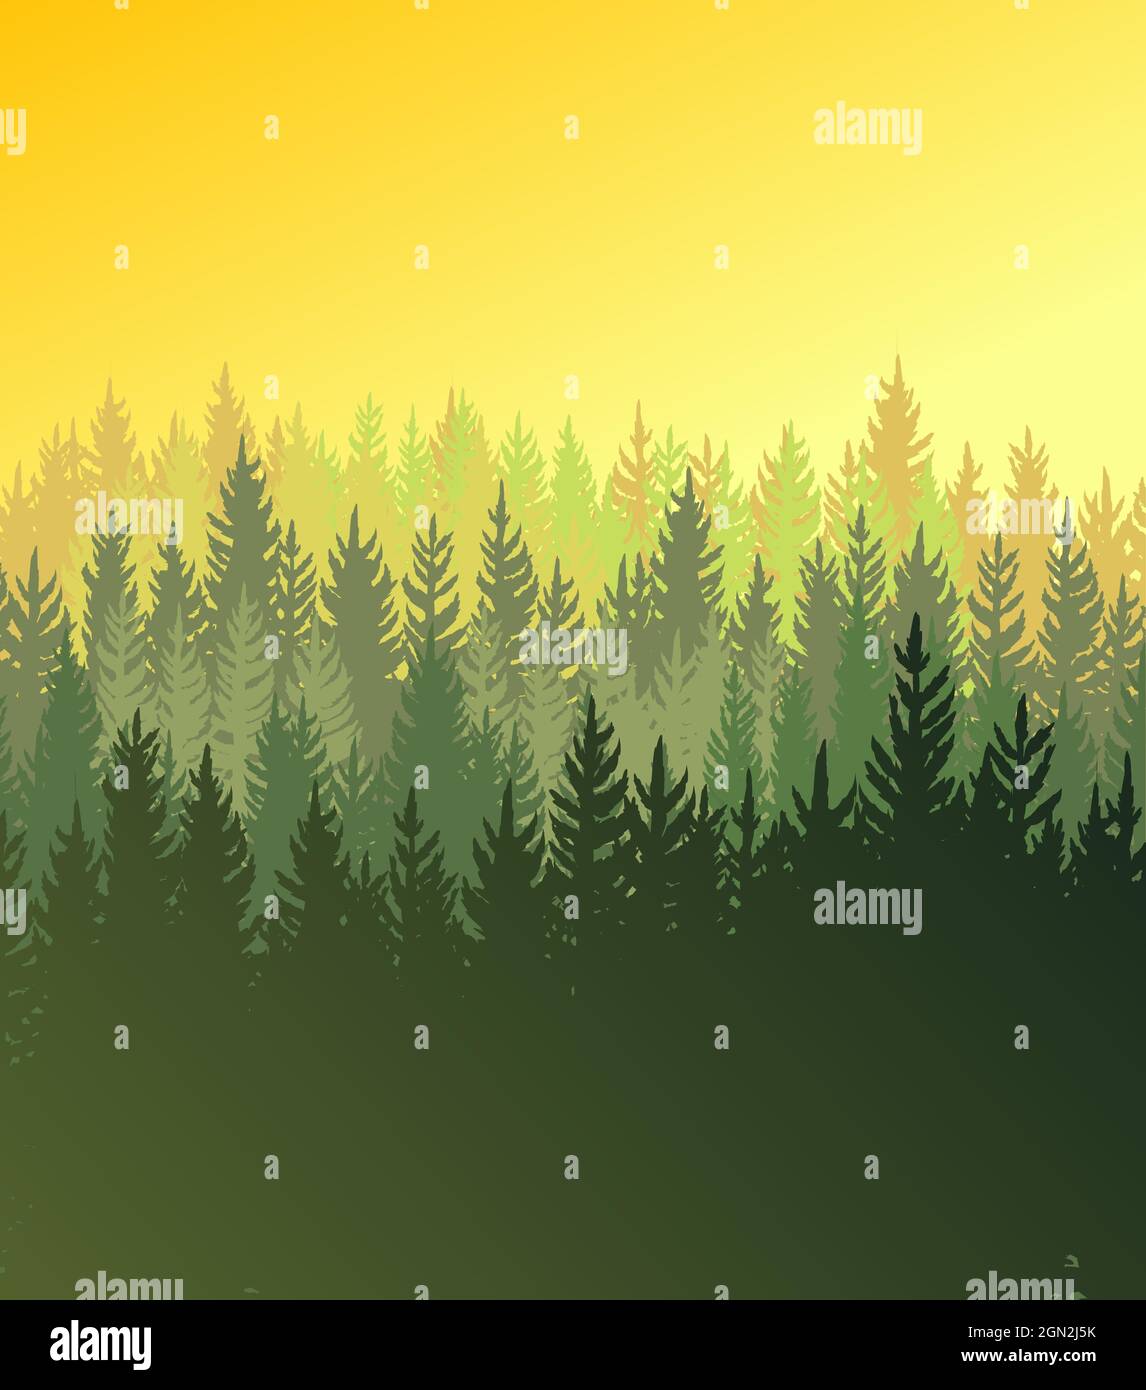 Waldhintergrund. Silhouette Panorama. Sonnenaufgang Landschaft mit Bäumen Nadelbäume. Wunderschöne Aussicht. Sommerszene. Illustrationsvektor Stock Vektor